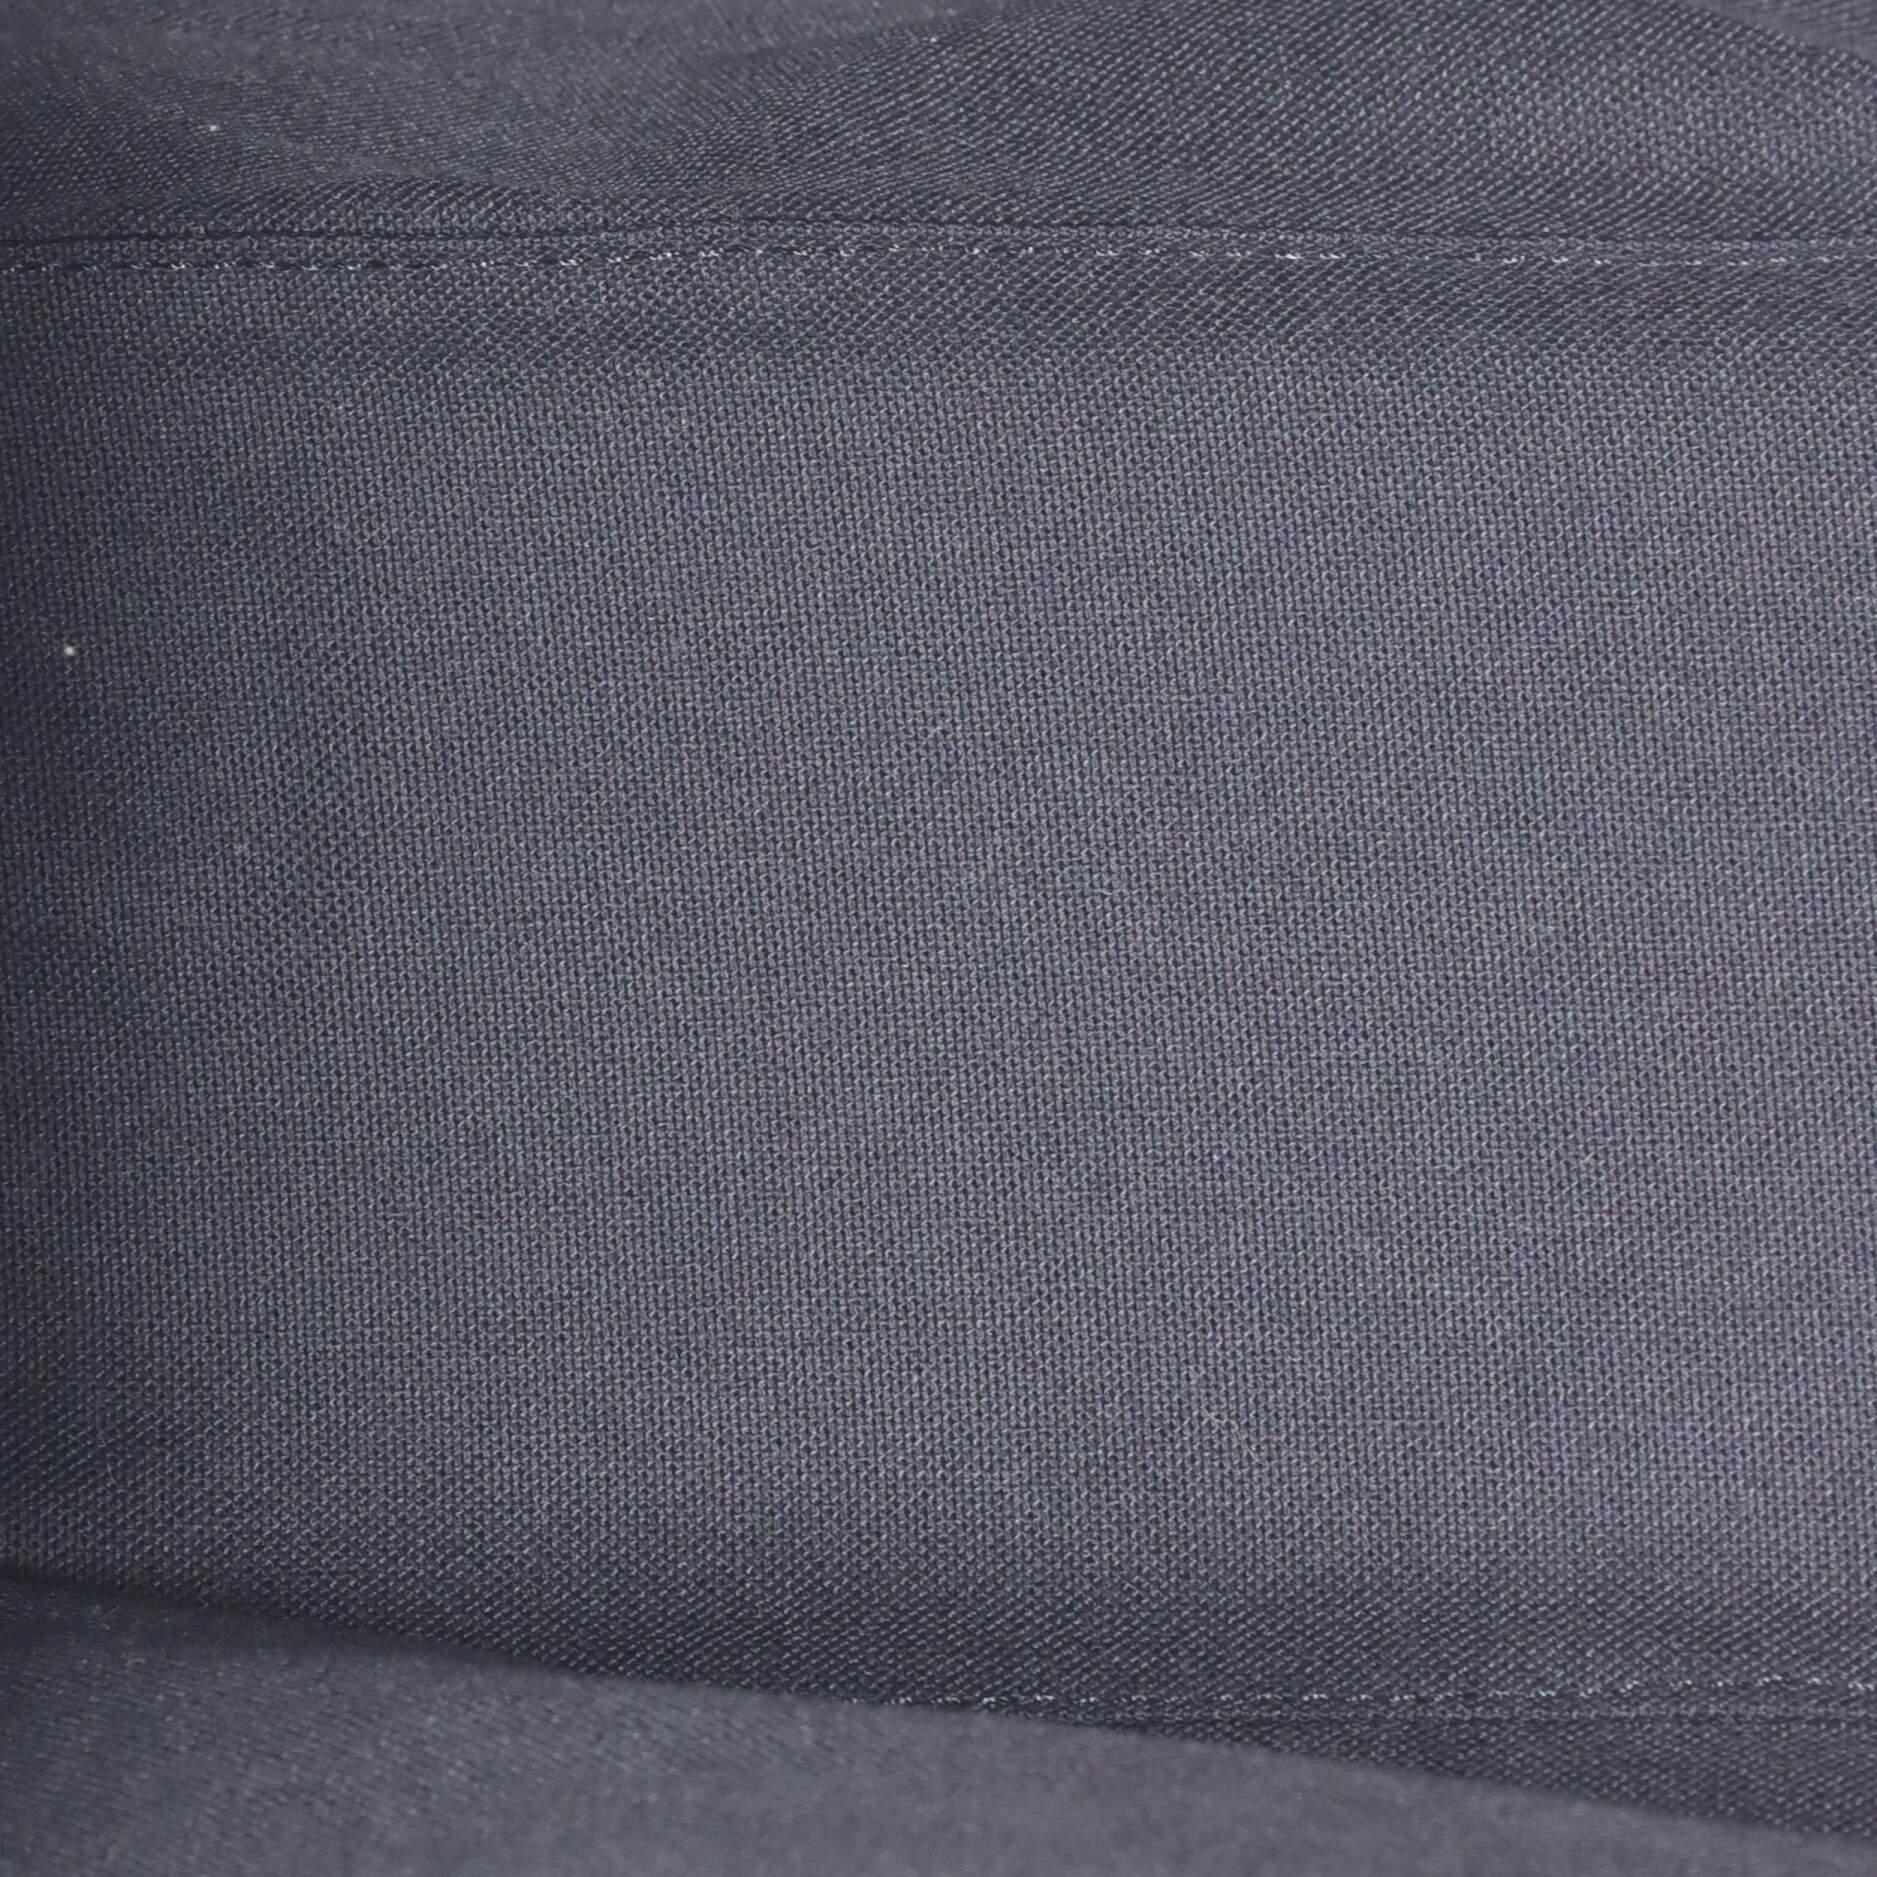 Louis Vuitton Rei Kawakubo Bag with Holes Monogram Empreinte Leather PM 2